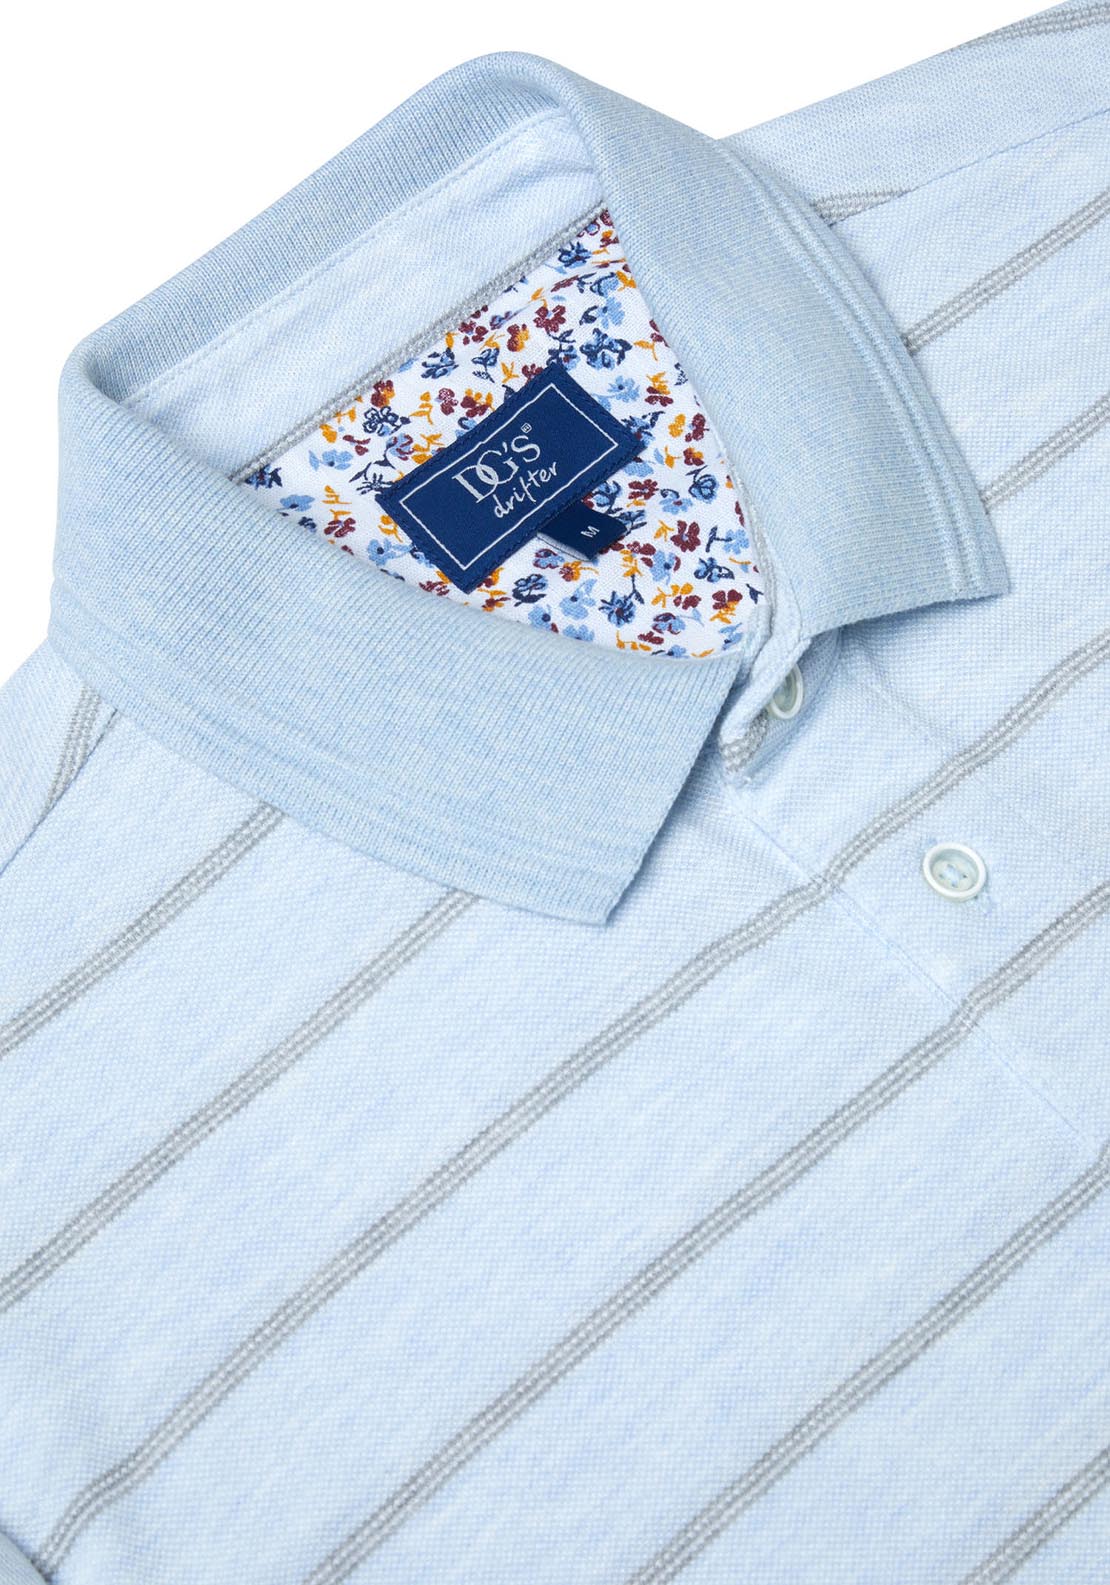 Drifter Short Sleeve Polo Shirt - Blue 3 Shaws Department Stores